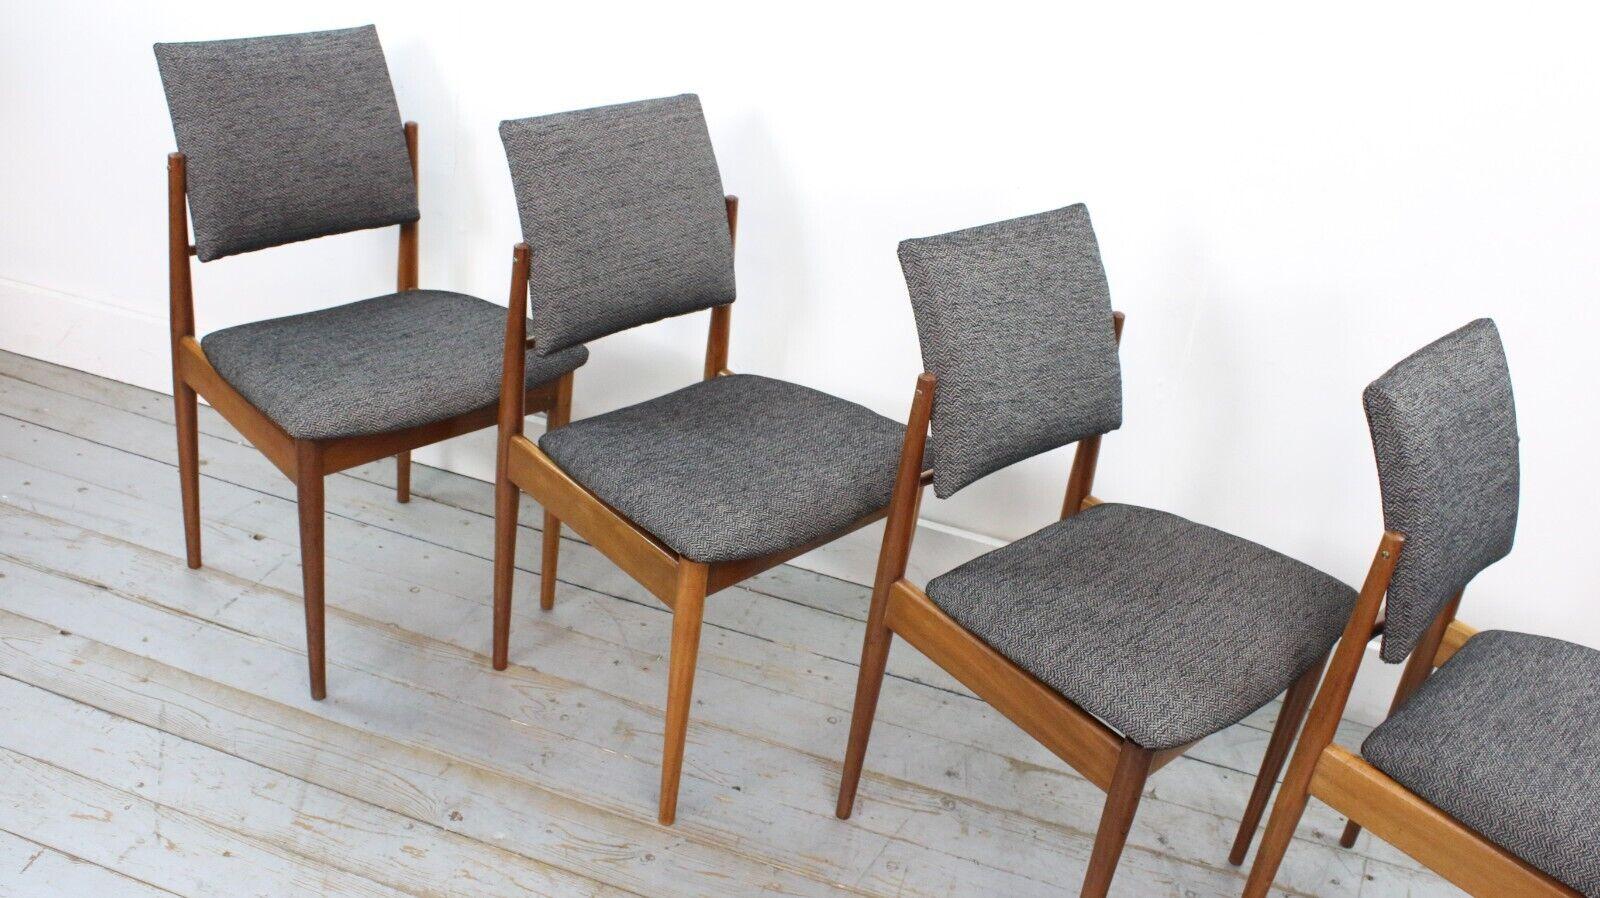 Rarement disponible, cet ensemble de chaises de salle à manger nouvellement tapissées a été conçu par Robert Heritage pour Archie Shine en 1960.

Quatre chaises à dossier souple de la gamme Berkshire, à structure en acajou, revêtues d'un tissu à